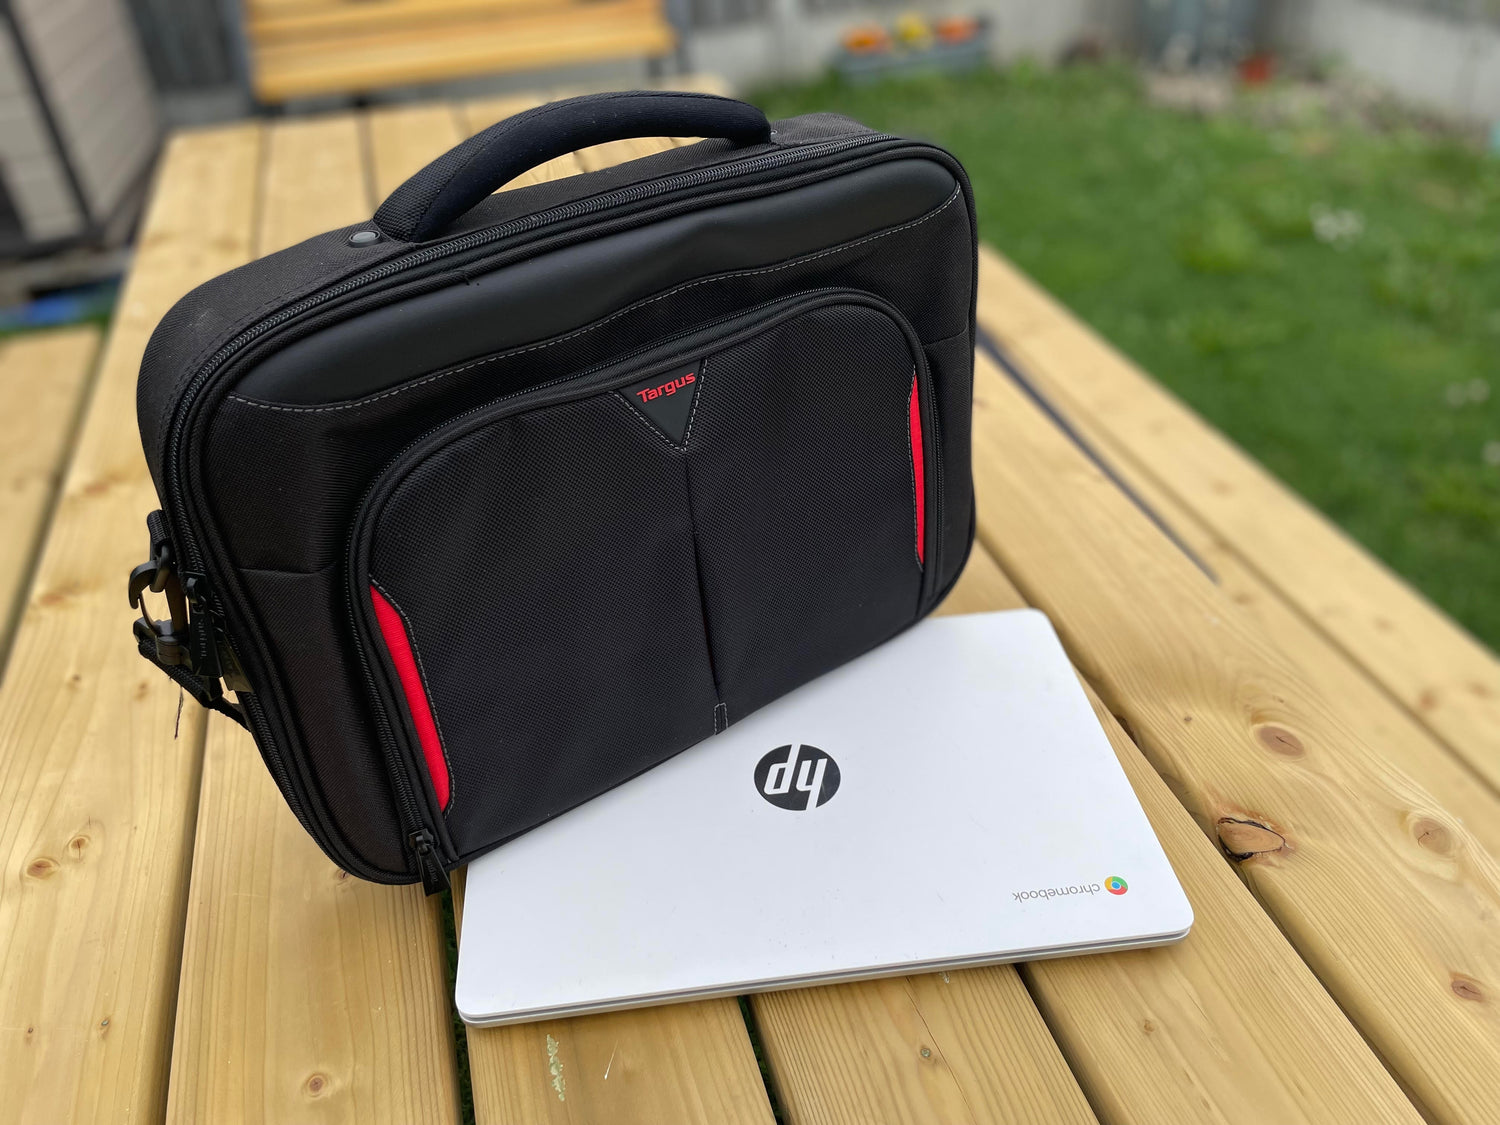 Laptop Bags & Backpacks